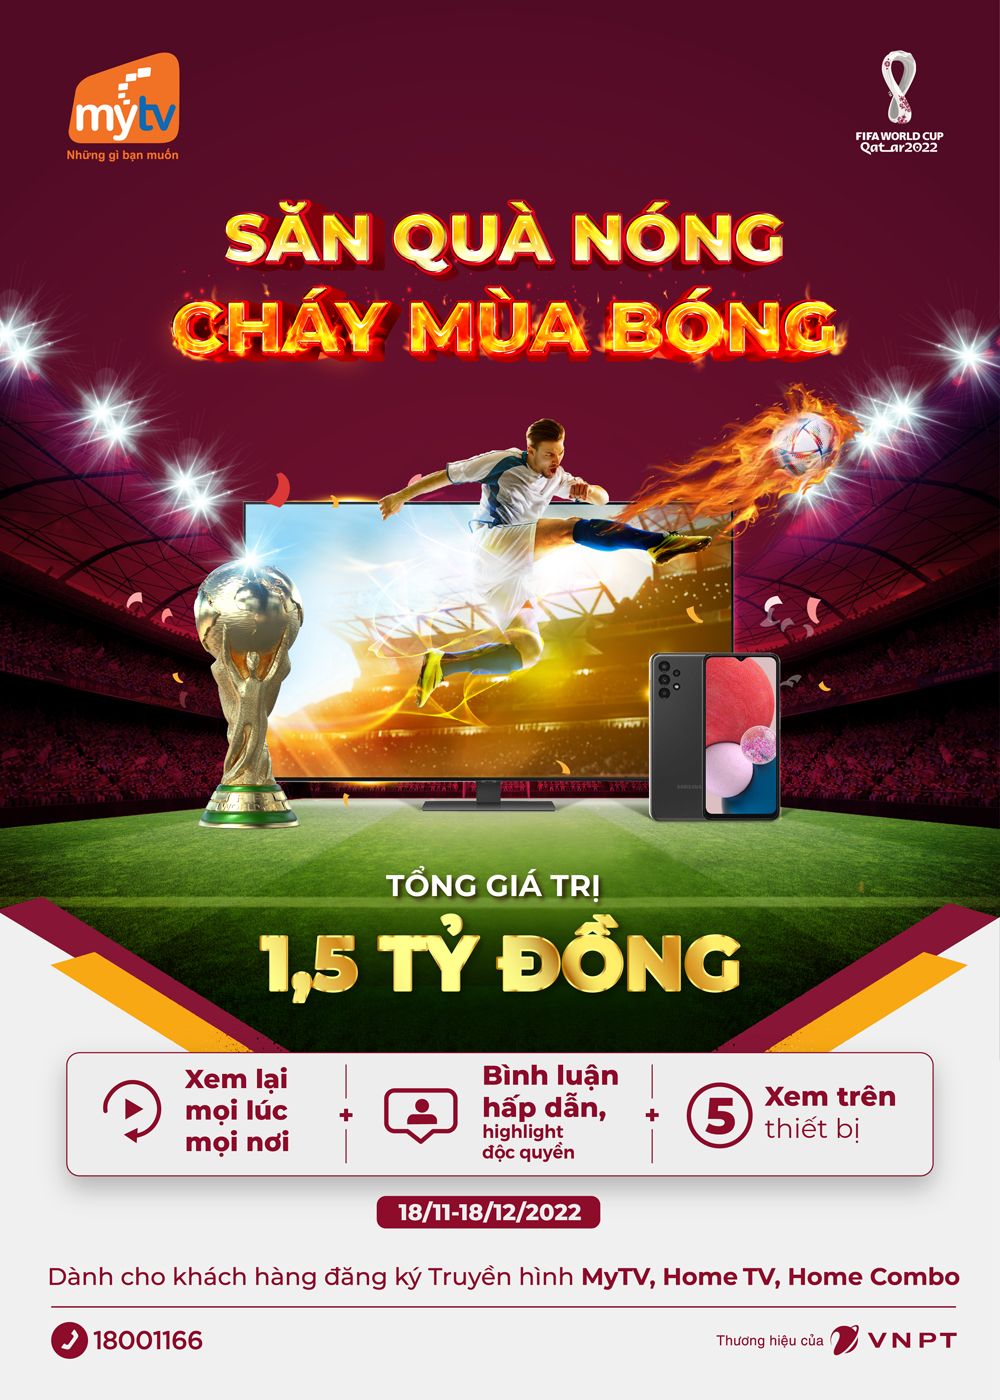 World Cup 2022, MyTV tung ưu đãi “Săn quà nóng - Cháy mùa bóng”